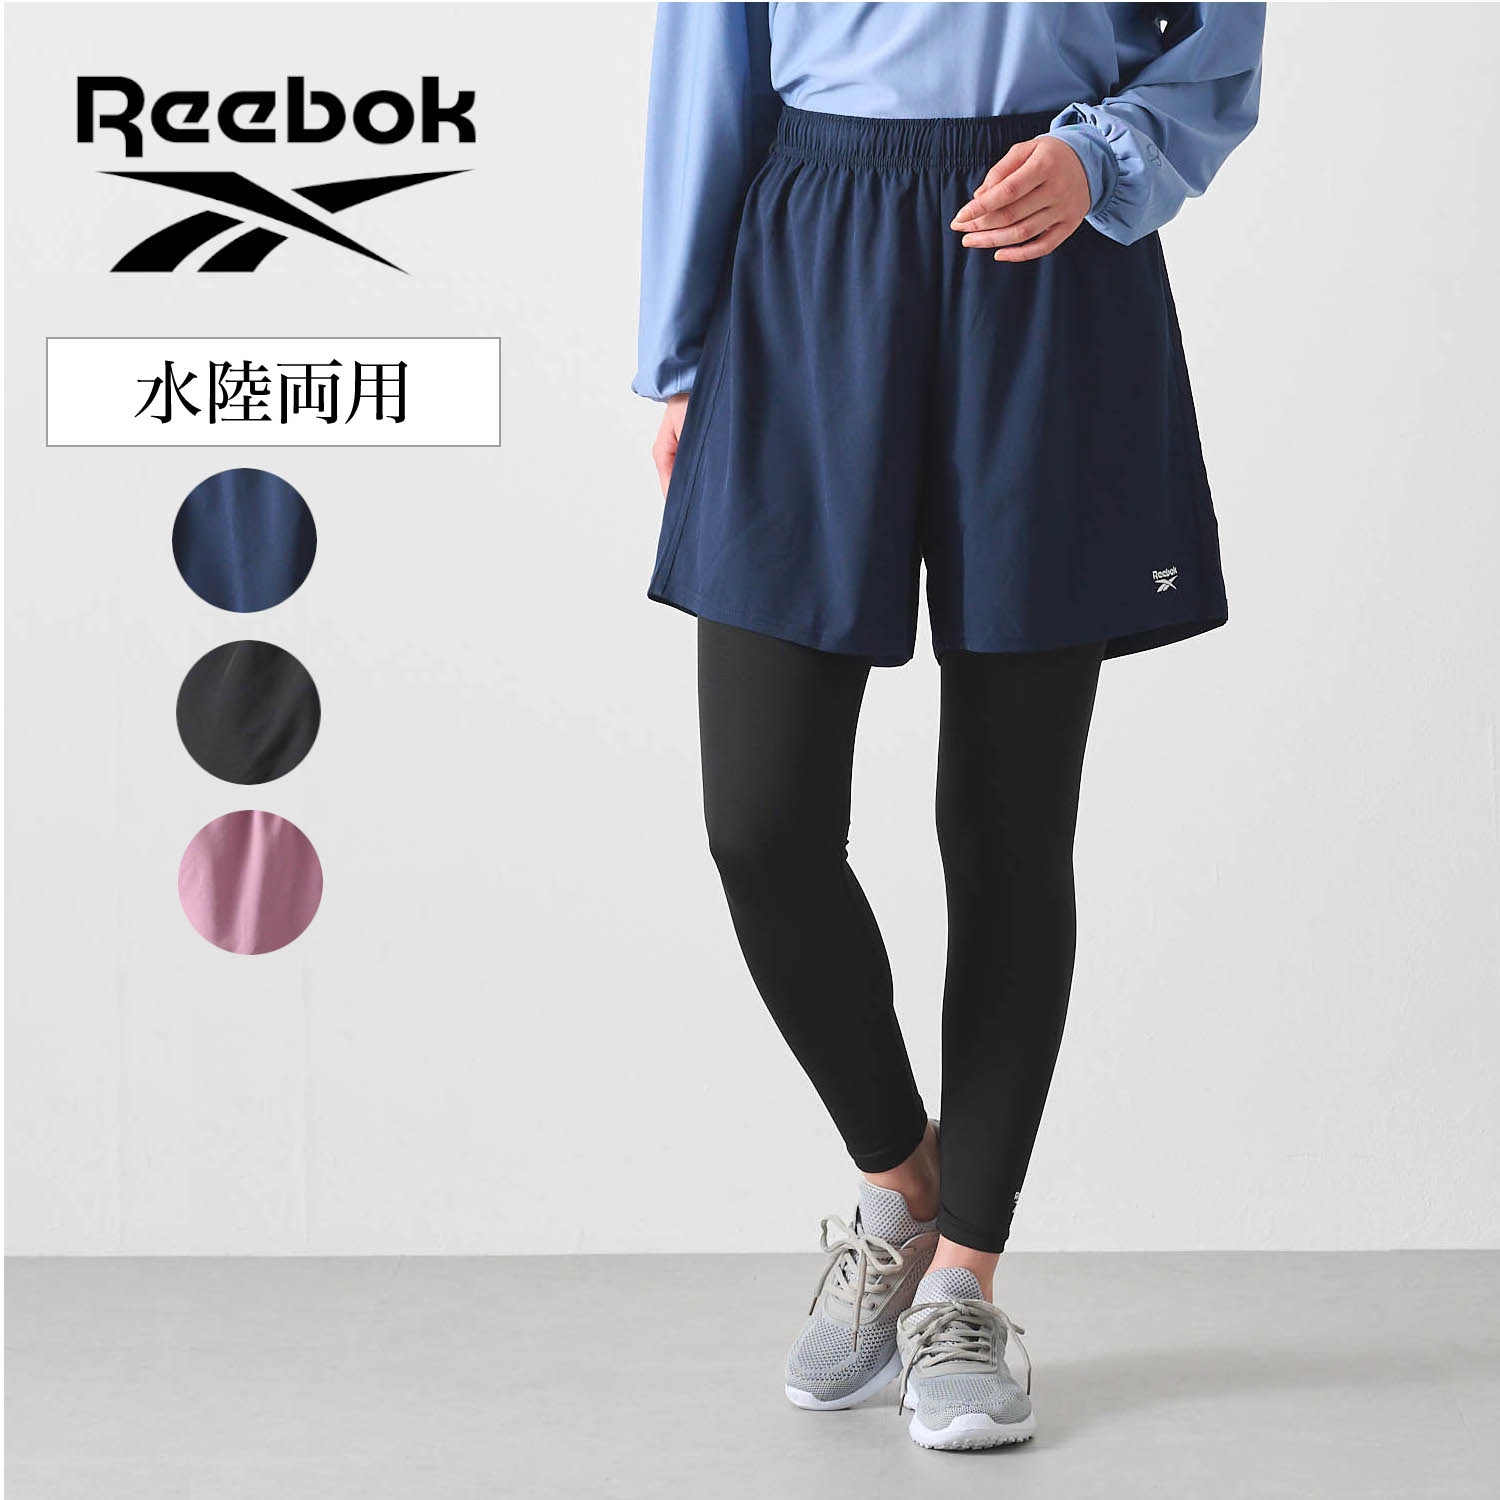 【リーボック/Reebok】ショートパンツ & コンプレッションタイツセット